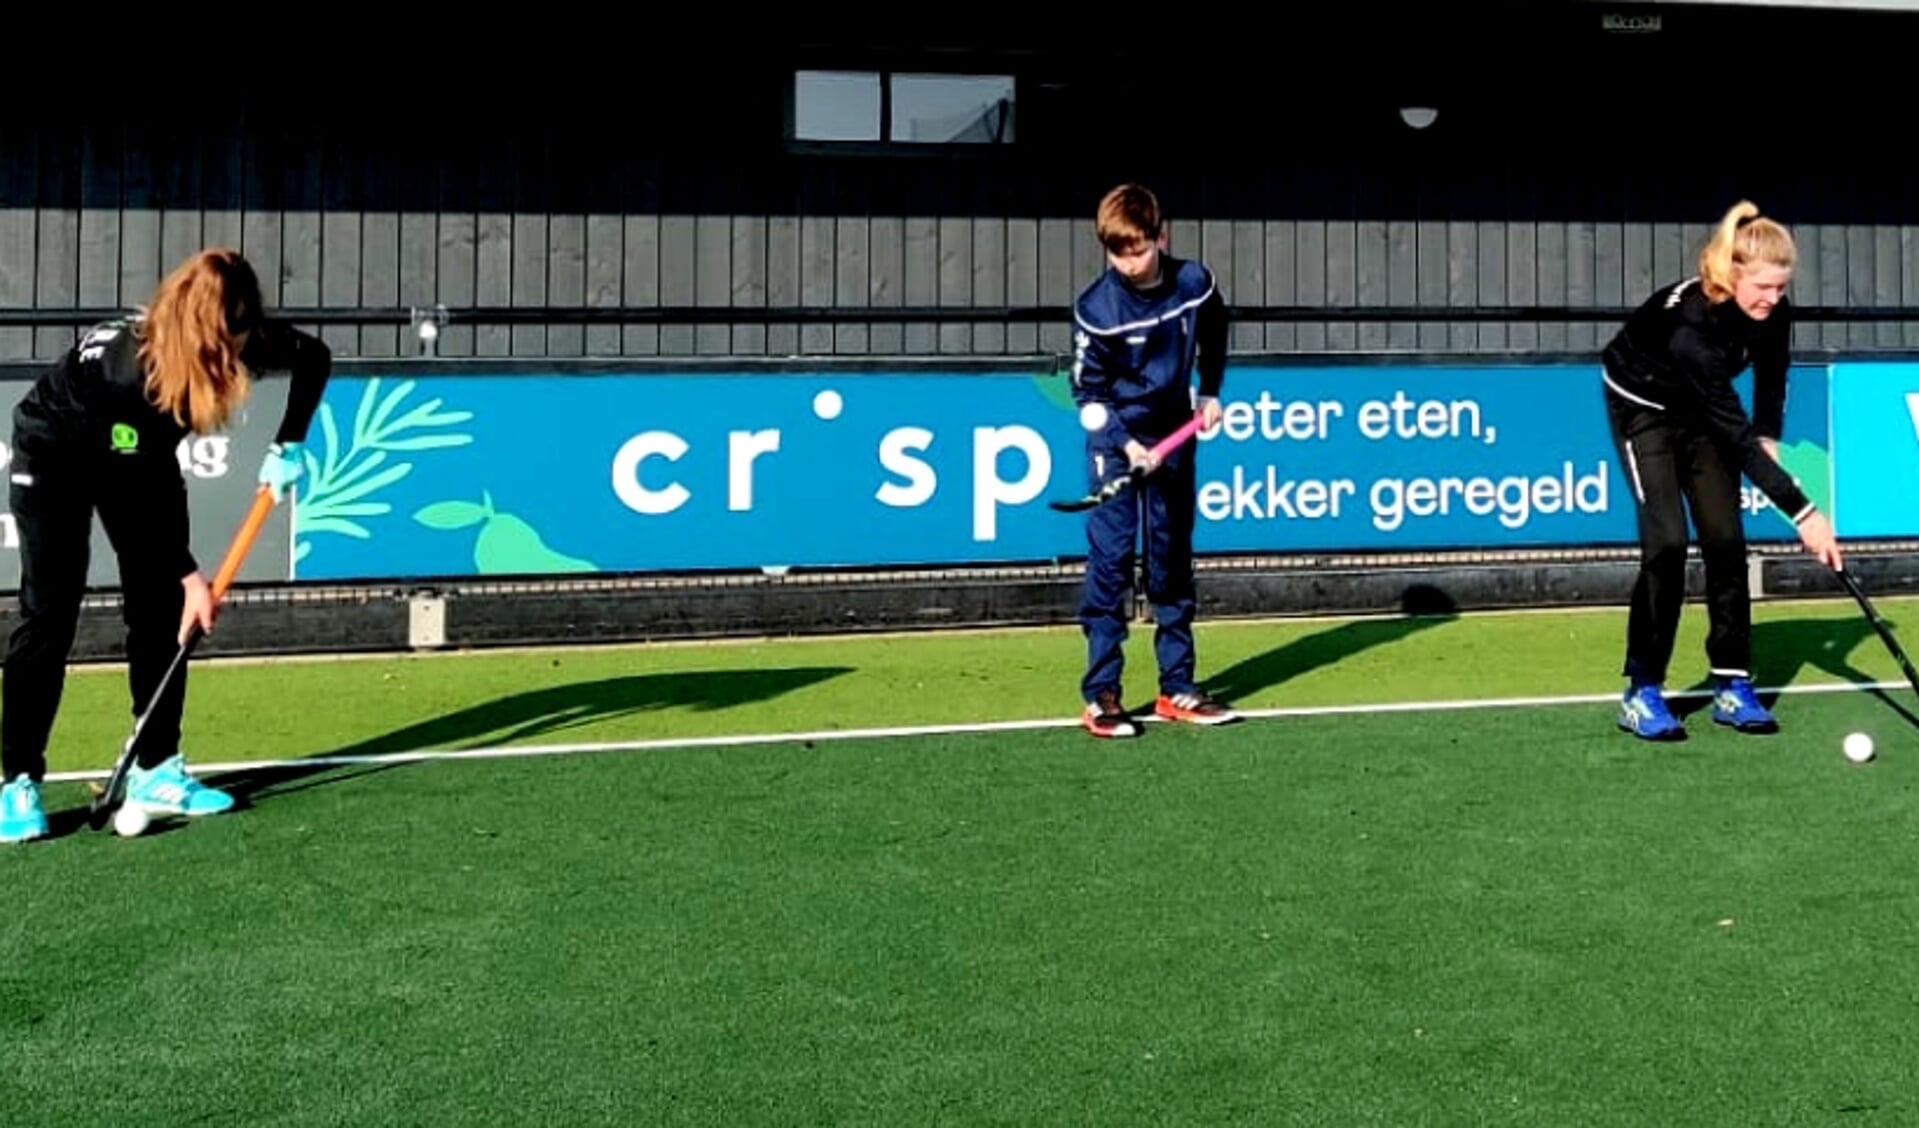 HC Den Bosch heeft er weer een nieuwe sponsor bij: Crisp.